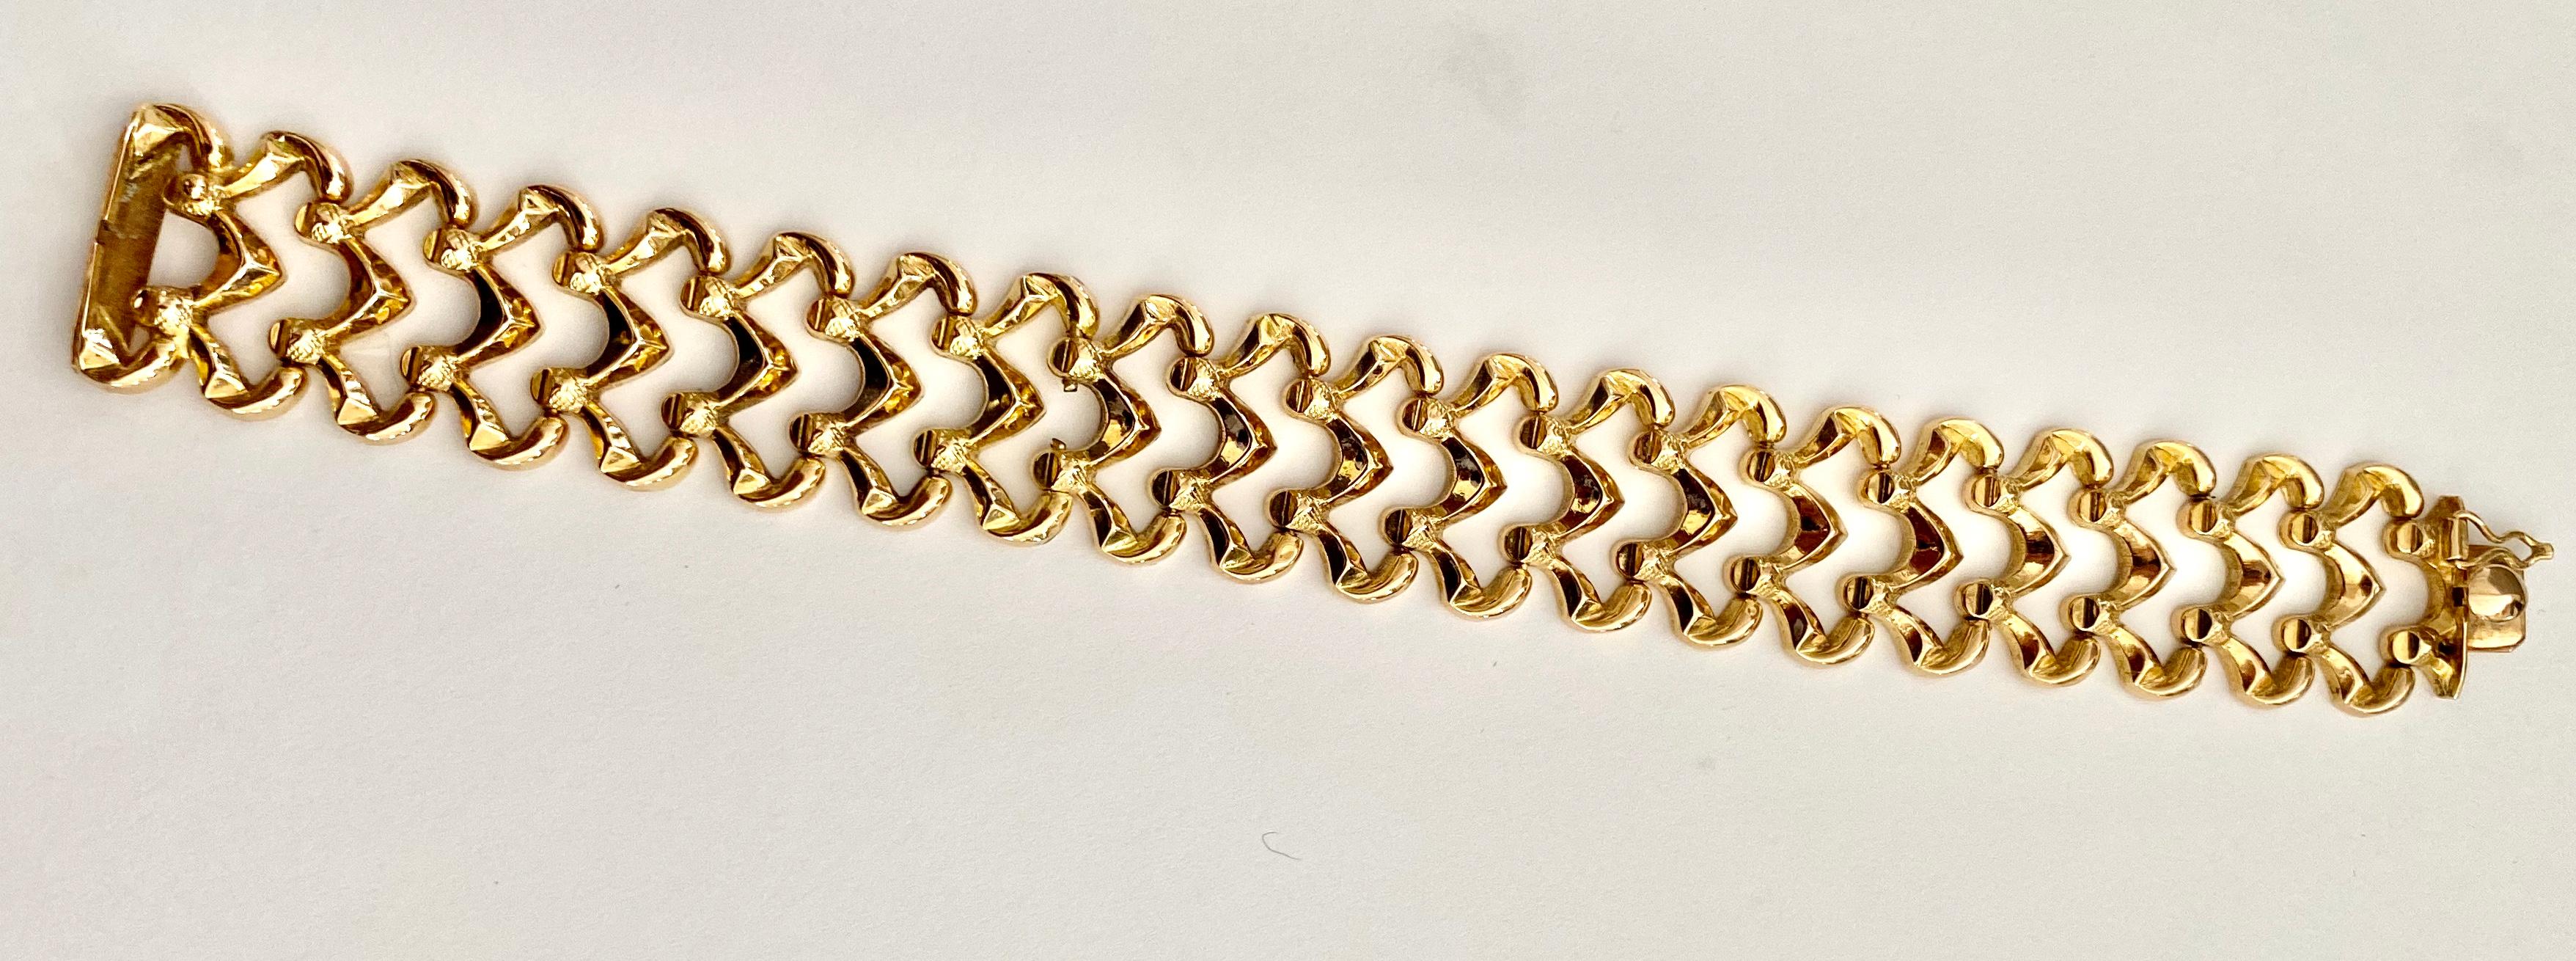 750 italy gold bracelet price